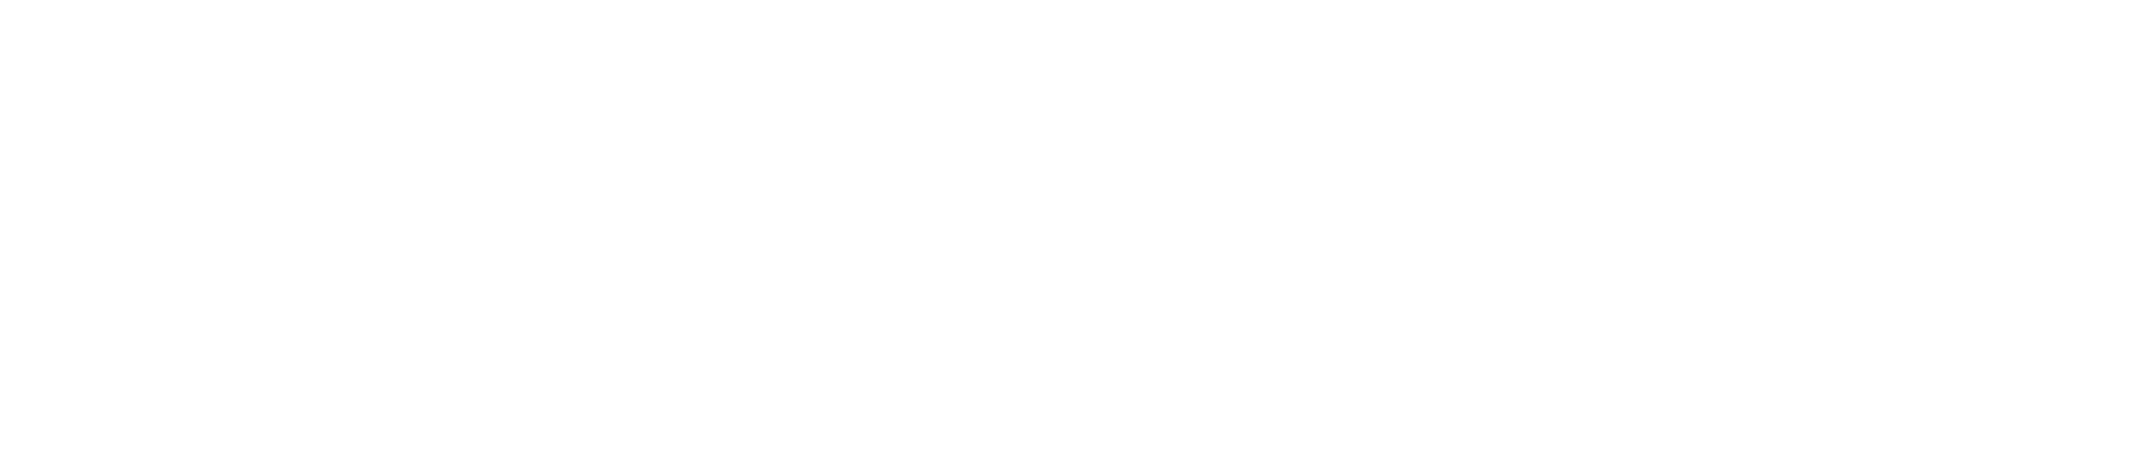 QOOT White Logo - Lebanon Agrifood Innovation Cluster